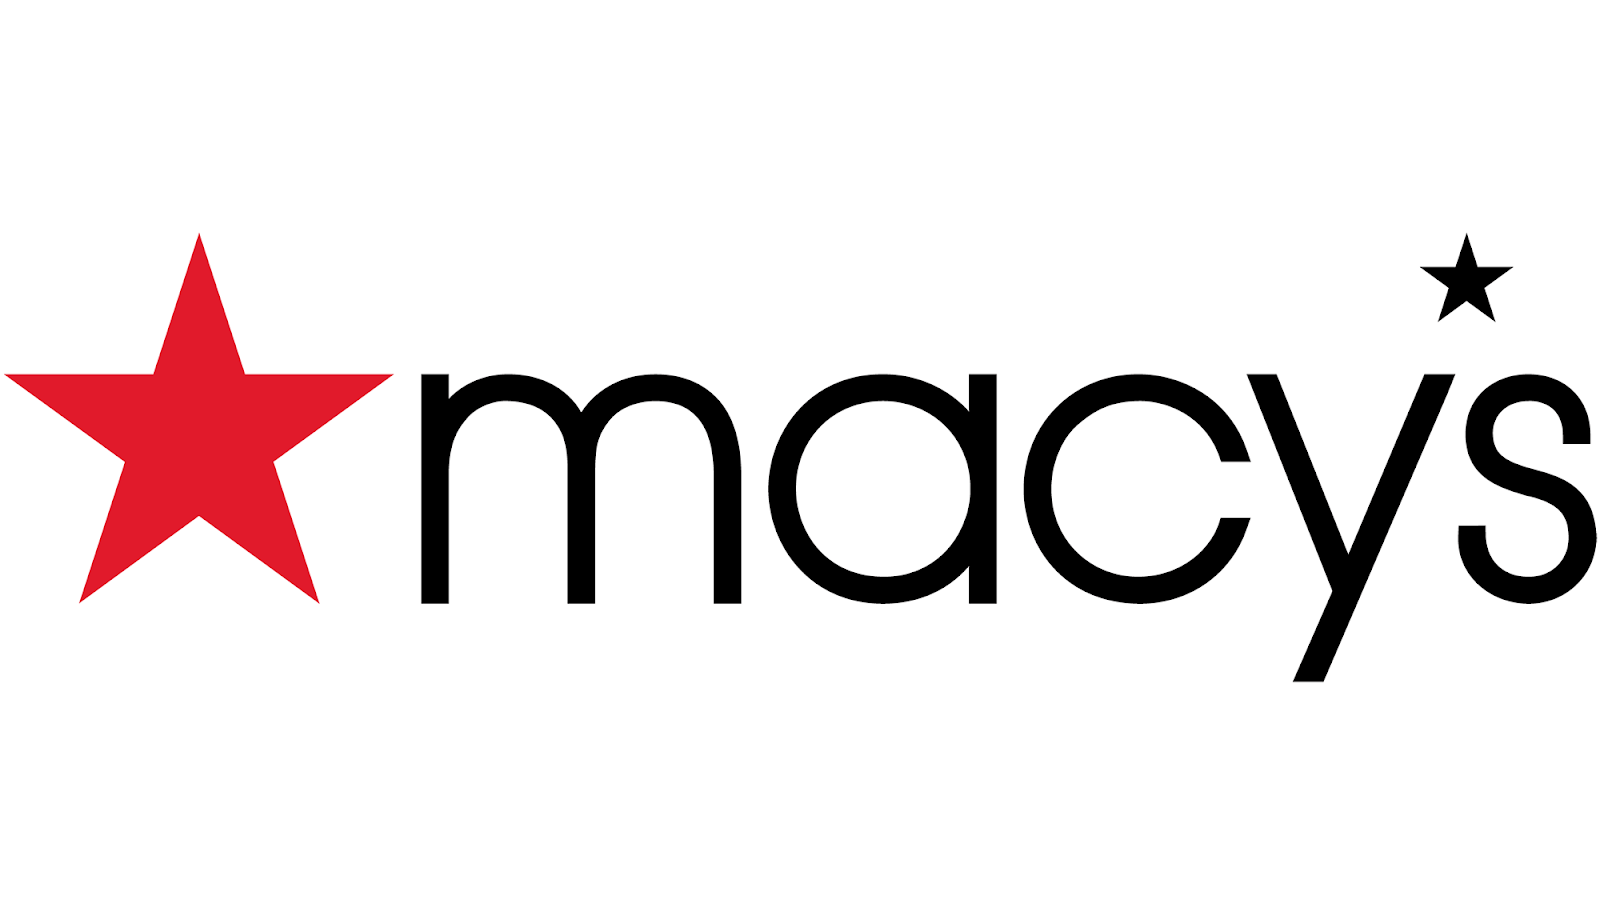 The logo for Macy's